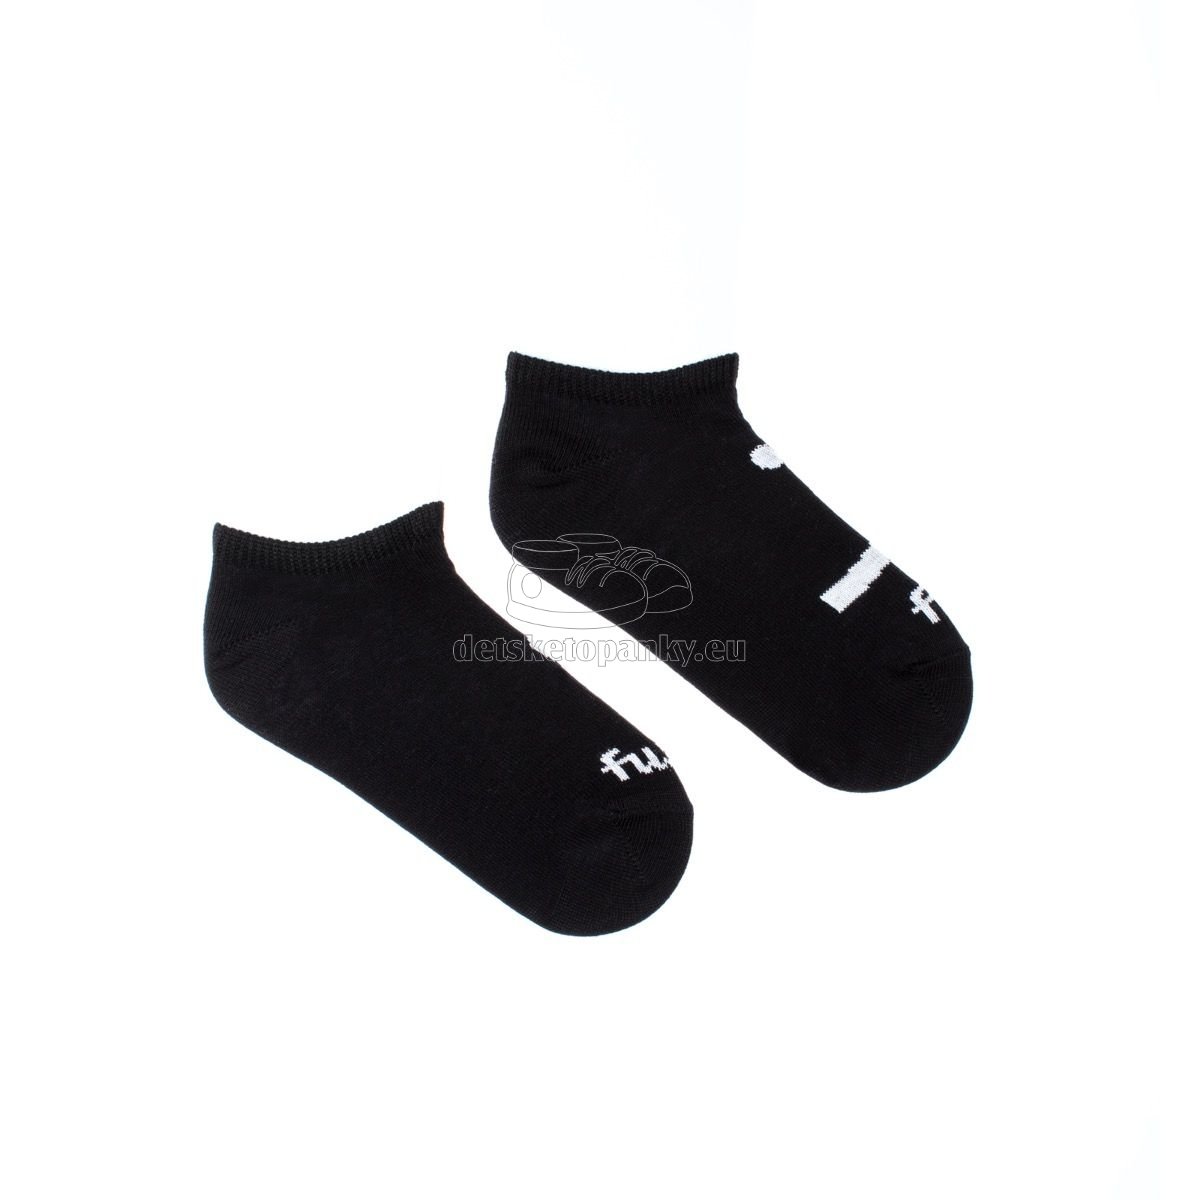 Ponožky Fusakle Podkotník Smajlík čierne